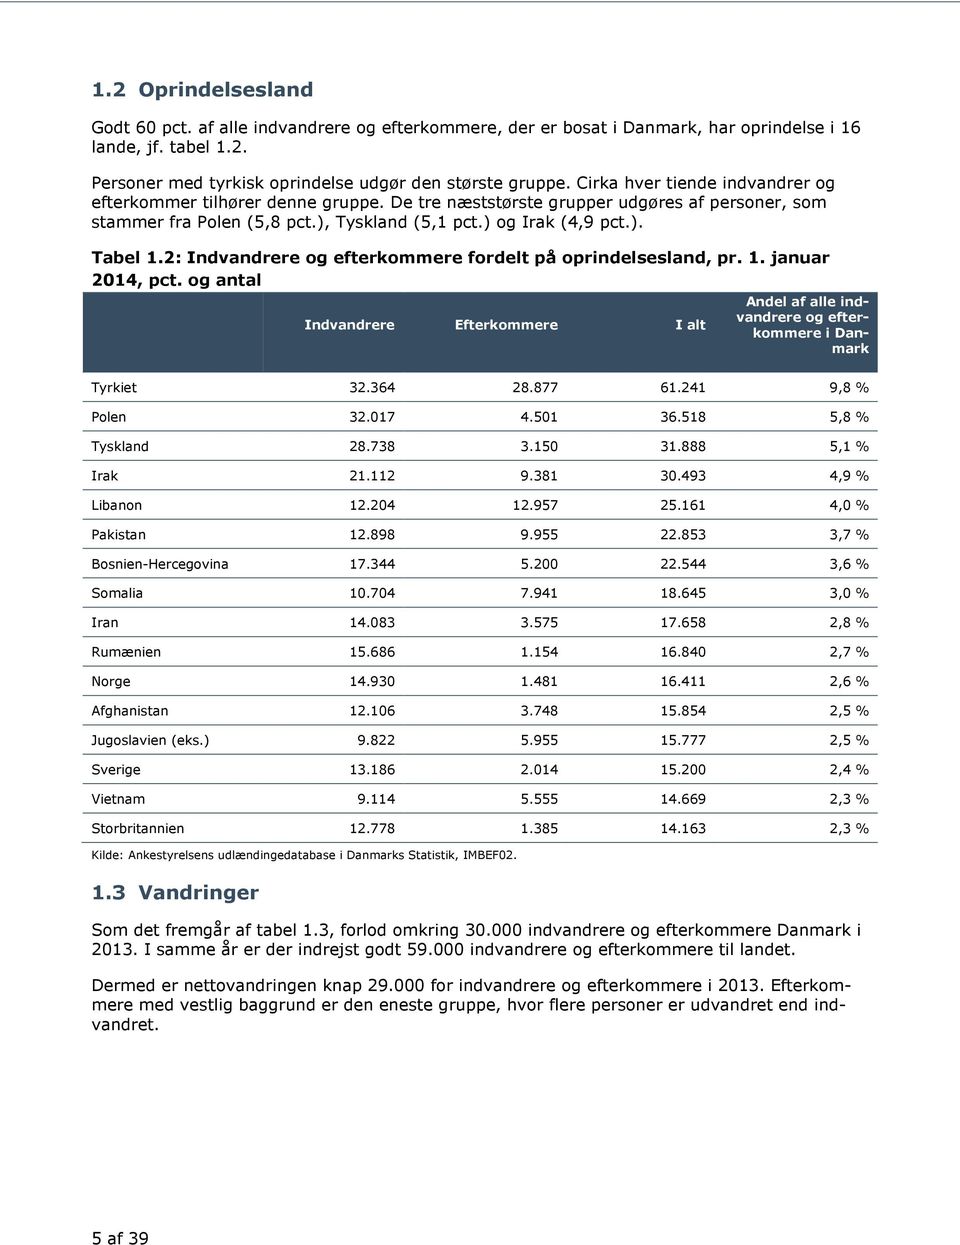 2: Indvandrere og efterkommere fordelt på oprindelsesland, pr. 1. januar 2014, pct. og antal Indvandrere Efterkommere I alt Andel af alle indvandrere og efterkommere i Danmark Tyrkiet 32.364 28.